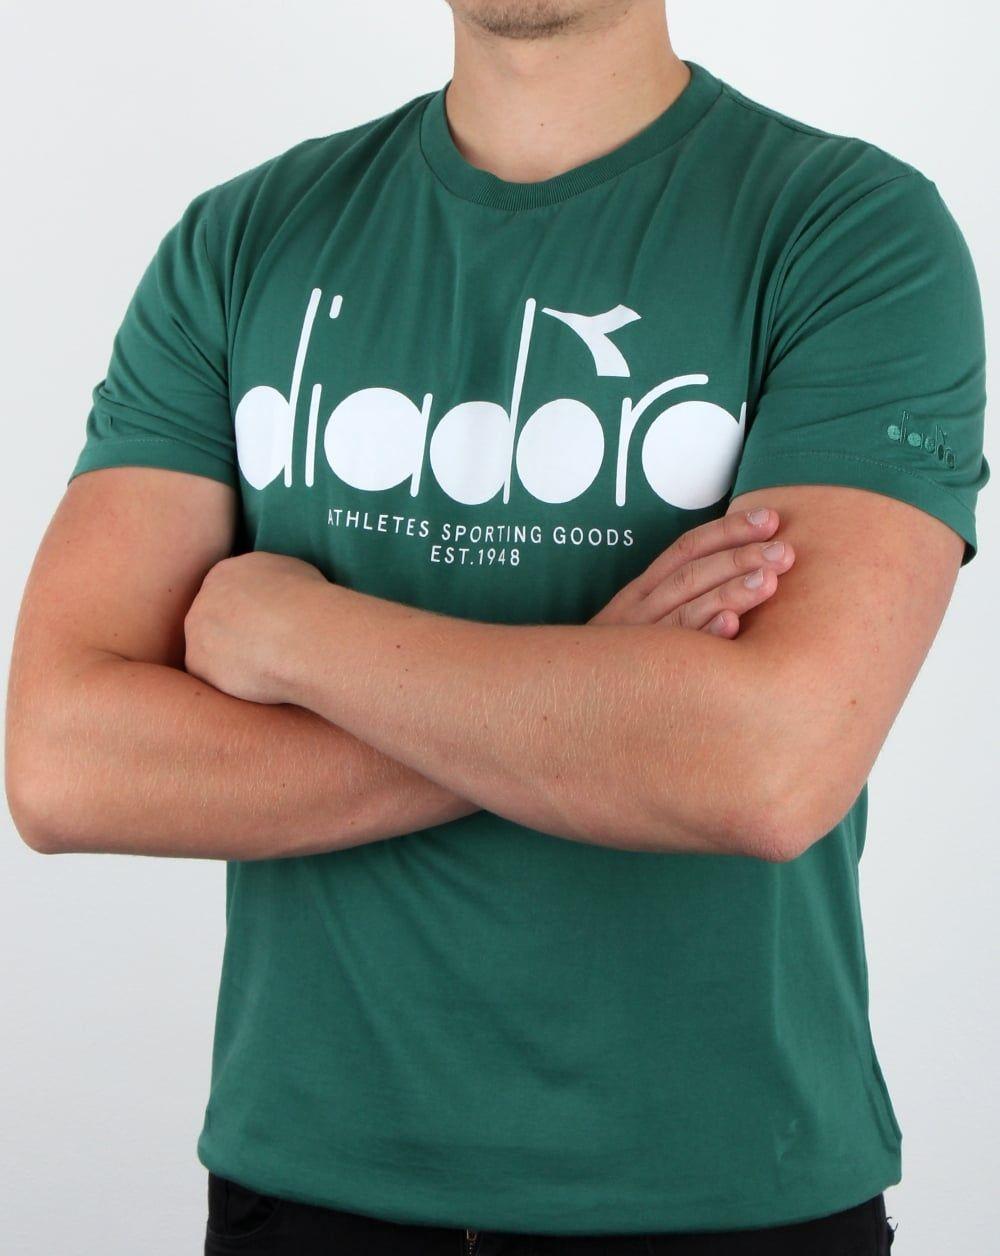 Diadora Shirt Logo - Diadora Logo T-shirt Posy Green, Men's, Tee, Crew Neck